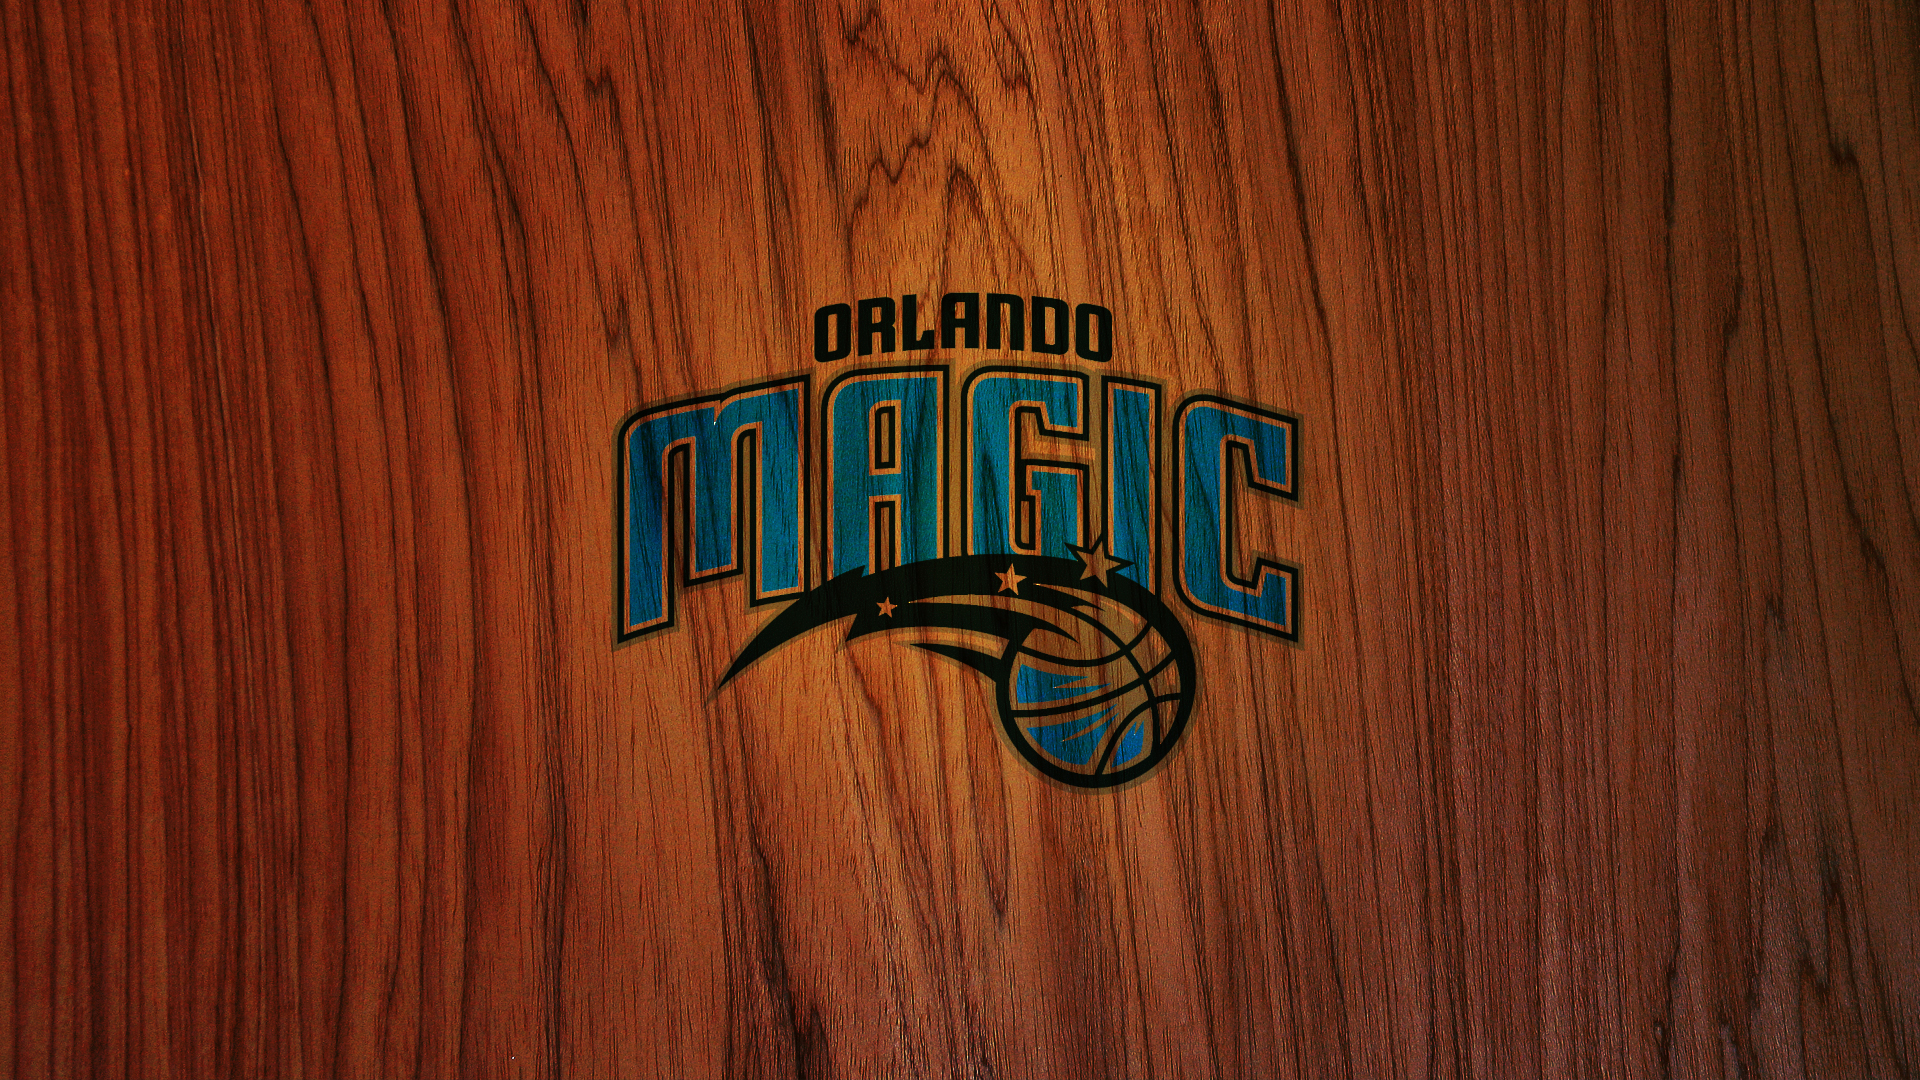 ORLANDO MAGIC nba basketball 4 wallpaper 1920x1080 227797